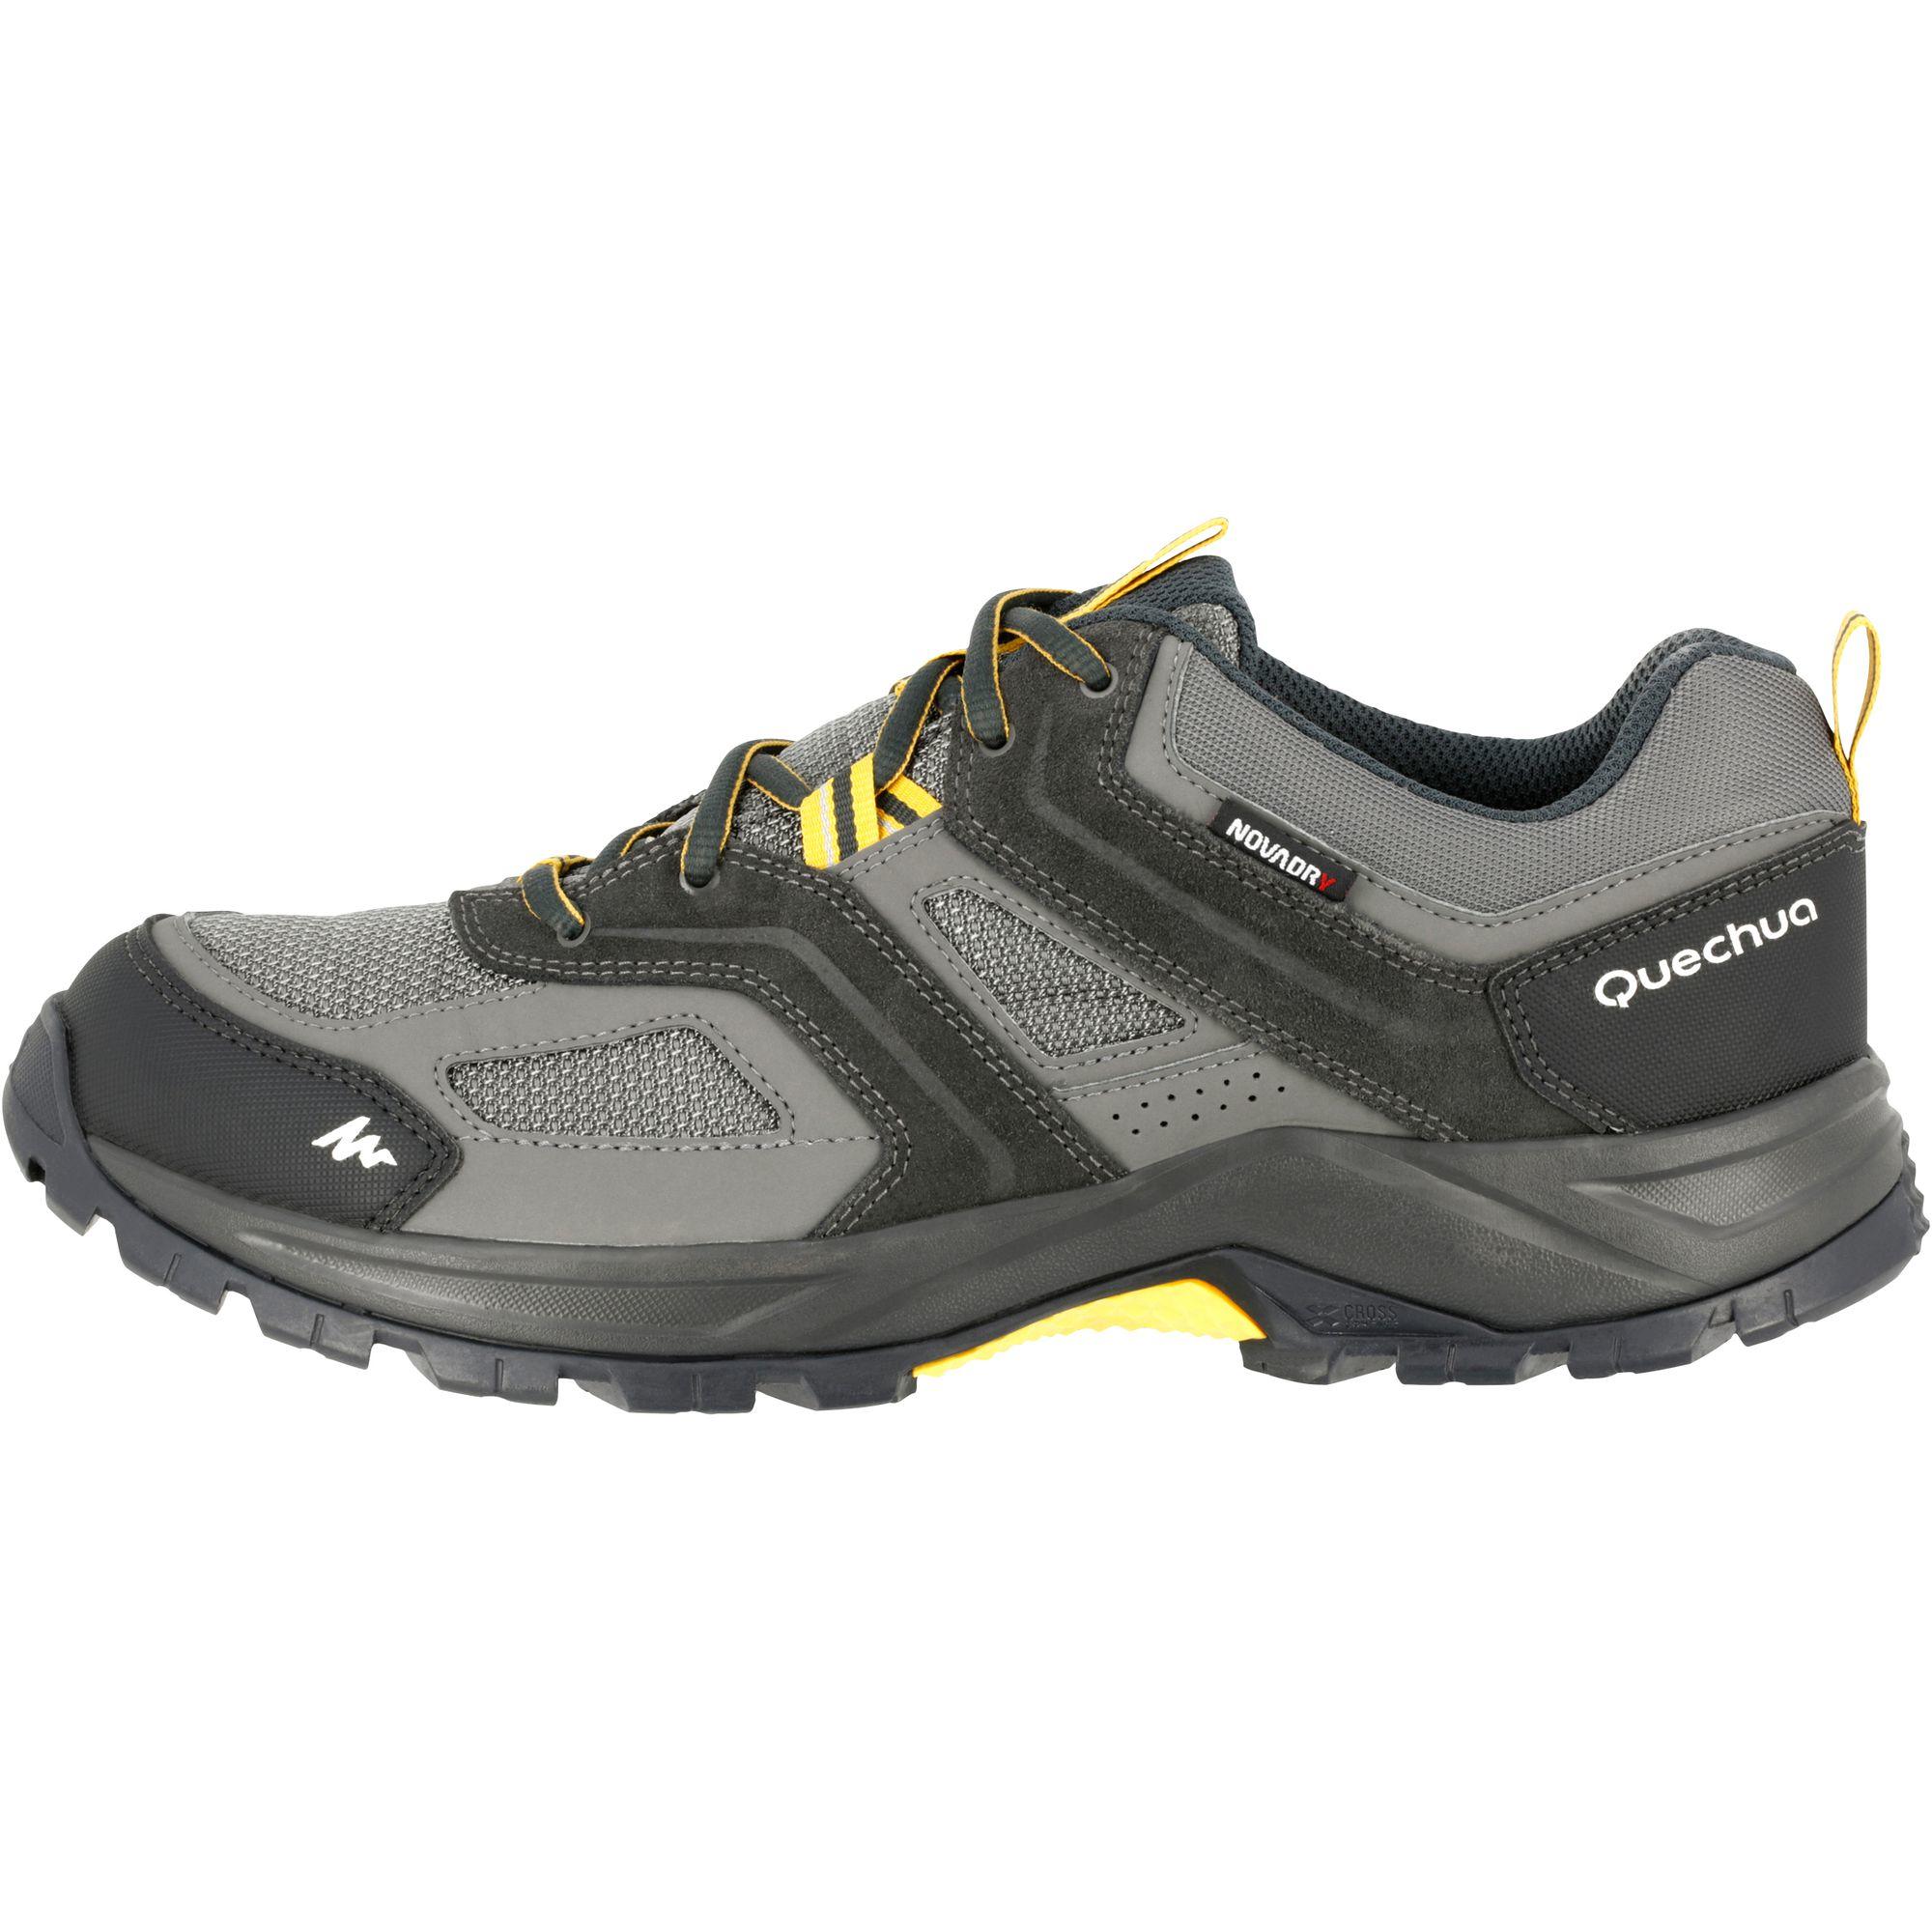 Arpenaz 100 Men's Waterproof Hiking Shoes Brown  11/13